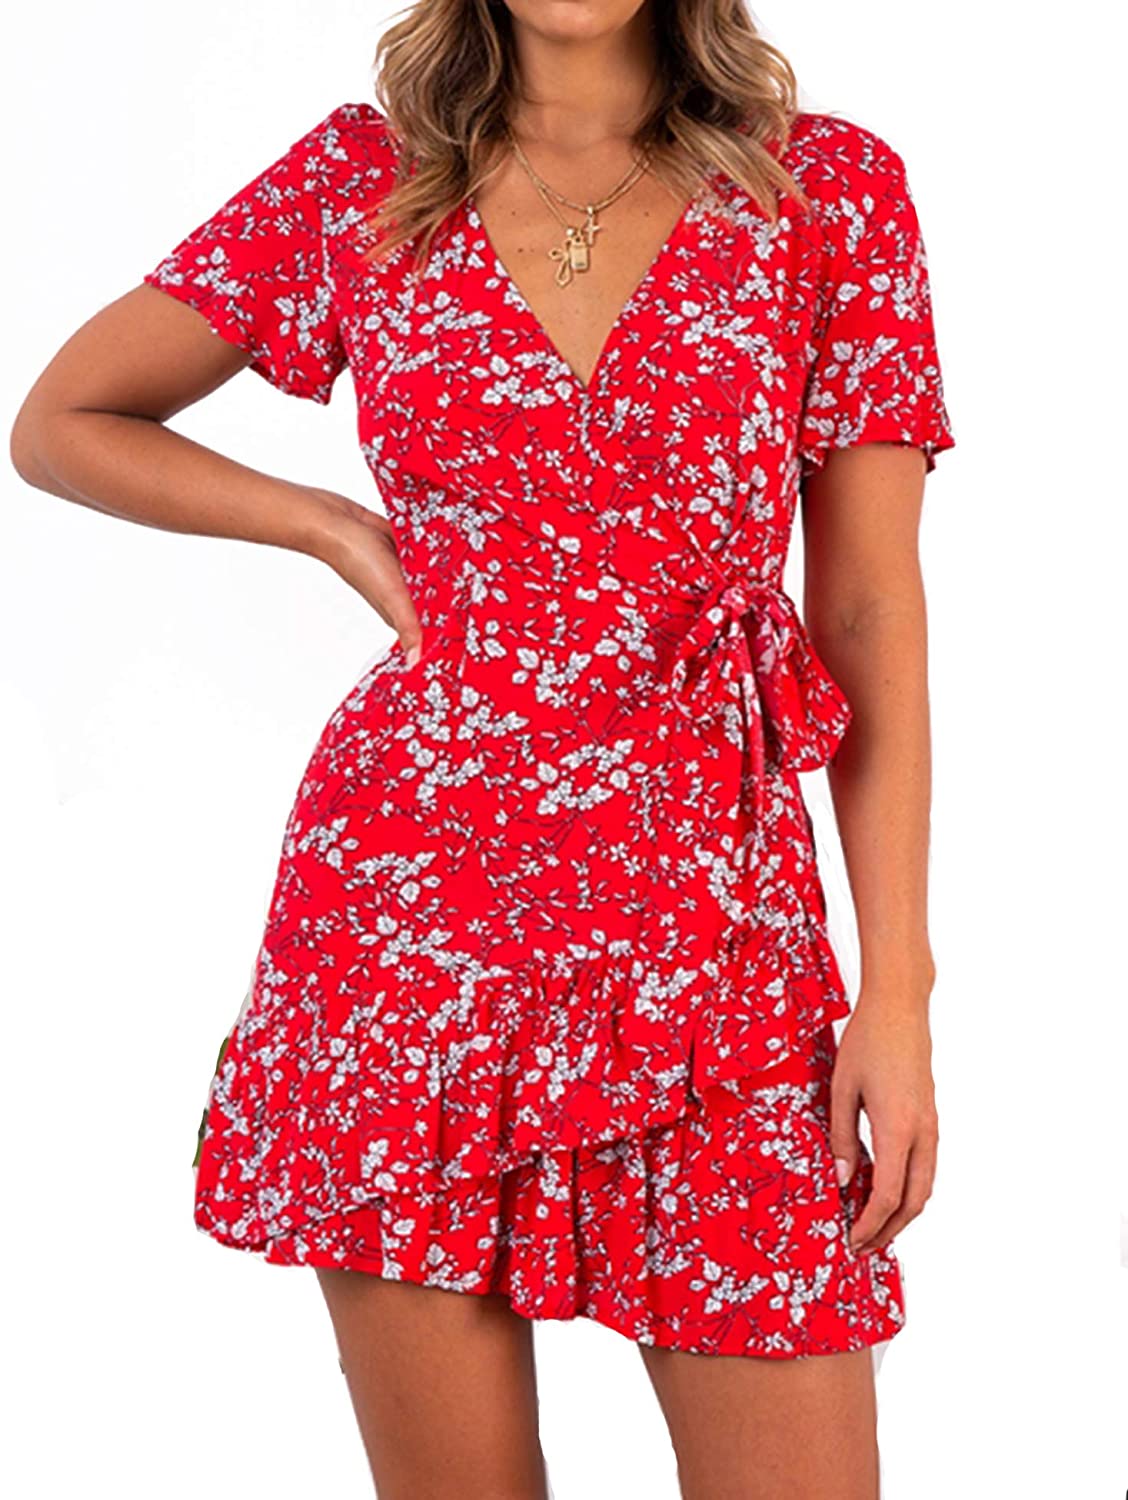 Relipop Summer Women Short Sleeve Print Dress V Neck Casual Short Dresses |  eBay